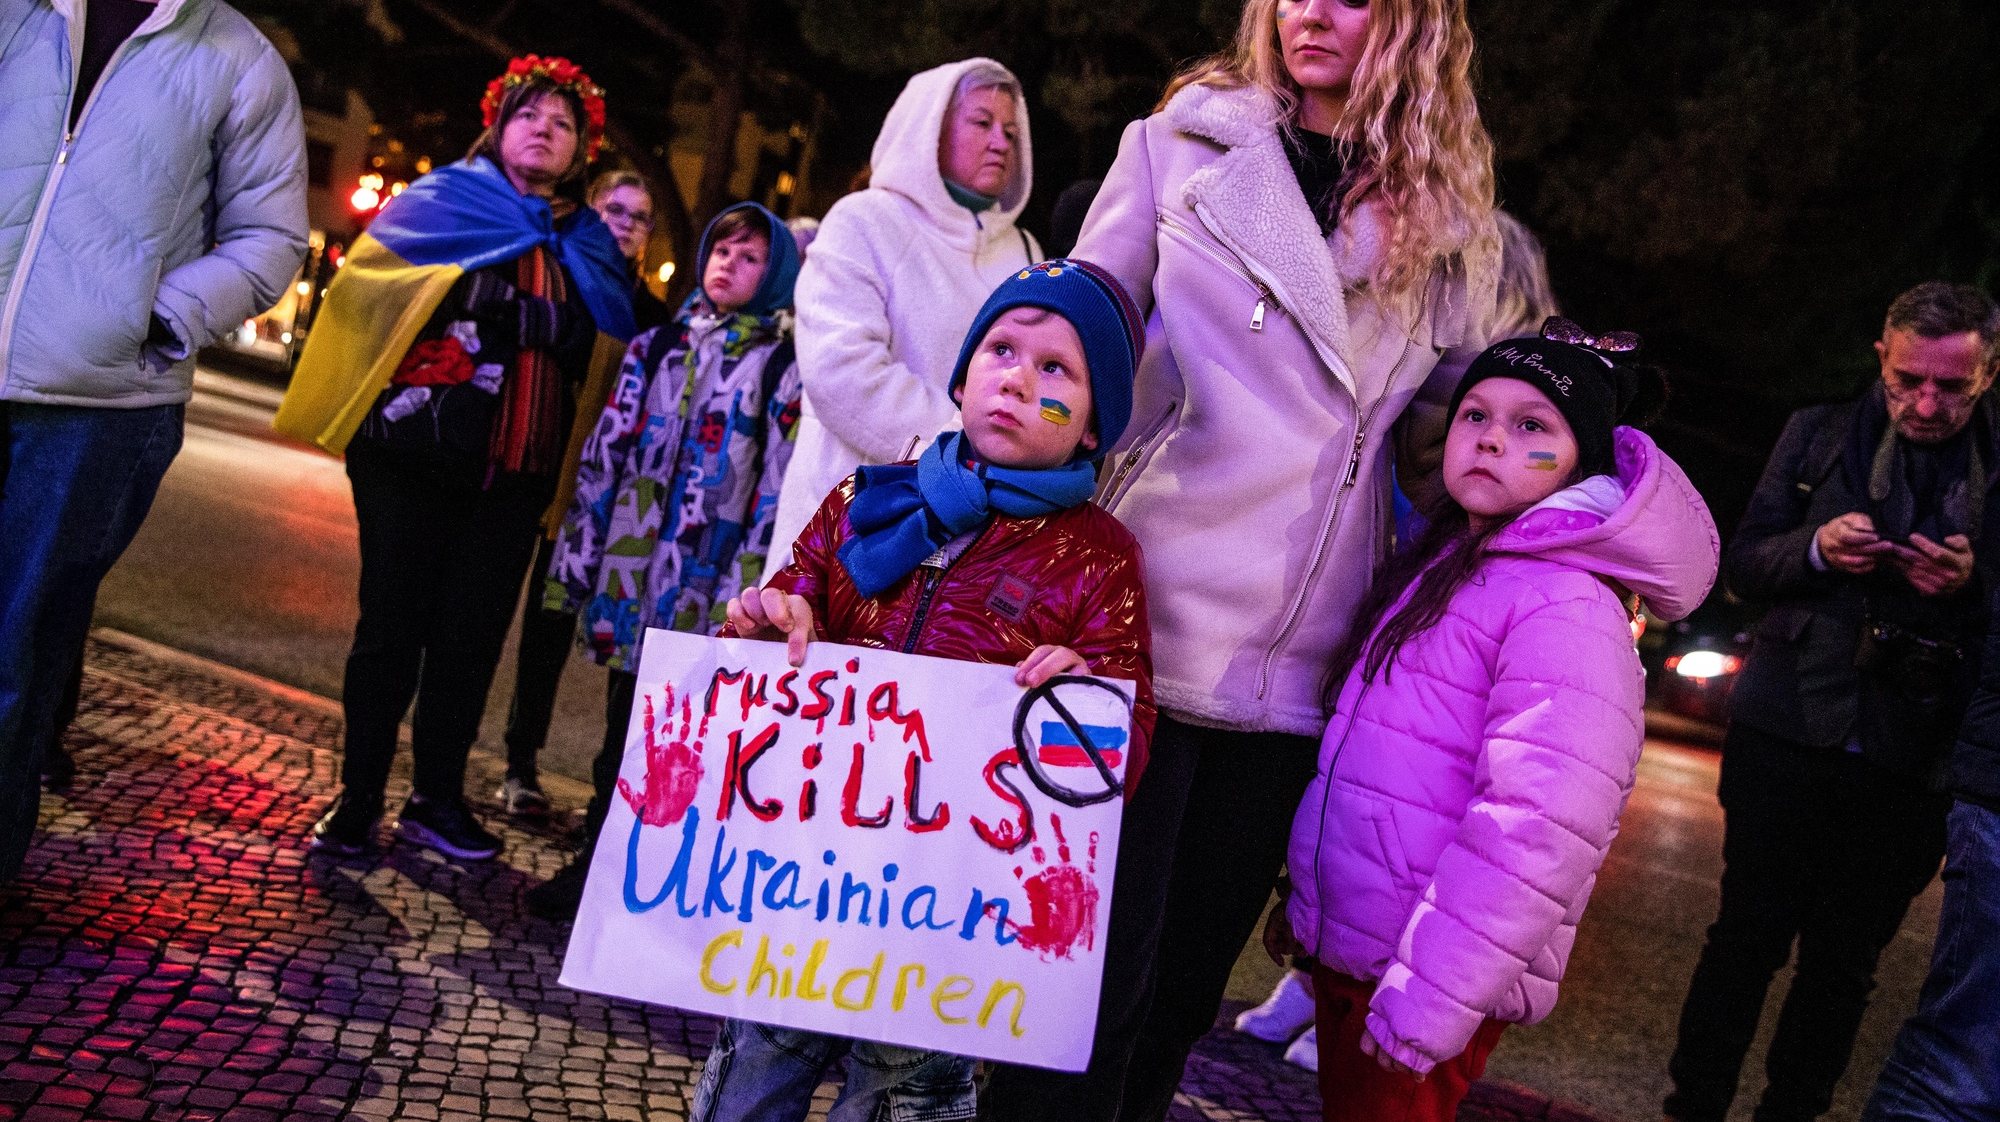 Uma crianças segura um cartaz com a frase “Russia Kills Ucraninian Children” durante uma vigília de um ano de guerra na Ucrânia, promovida pelo Núcleo da Associação dos Ucranianos em Portugal de Leiria, junto ao edifício da Câmara Municipal, 24 de fevereiro de 2023. Na ocasião é cantado o hino nacional da Ucrânia e é feito um minuto de silêncio em memória das vítimas. PAULO CUNHA/LUSA